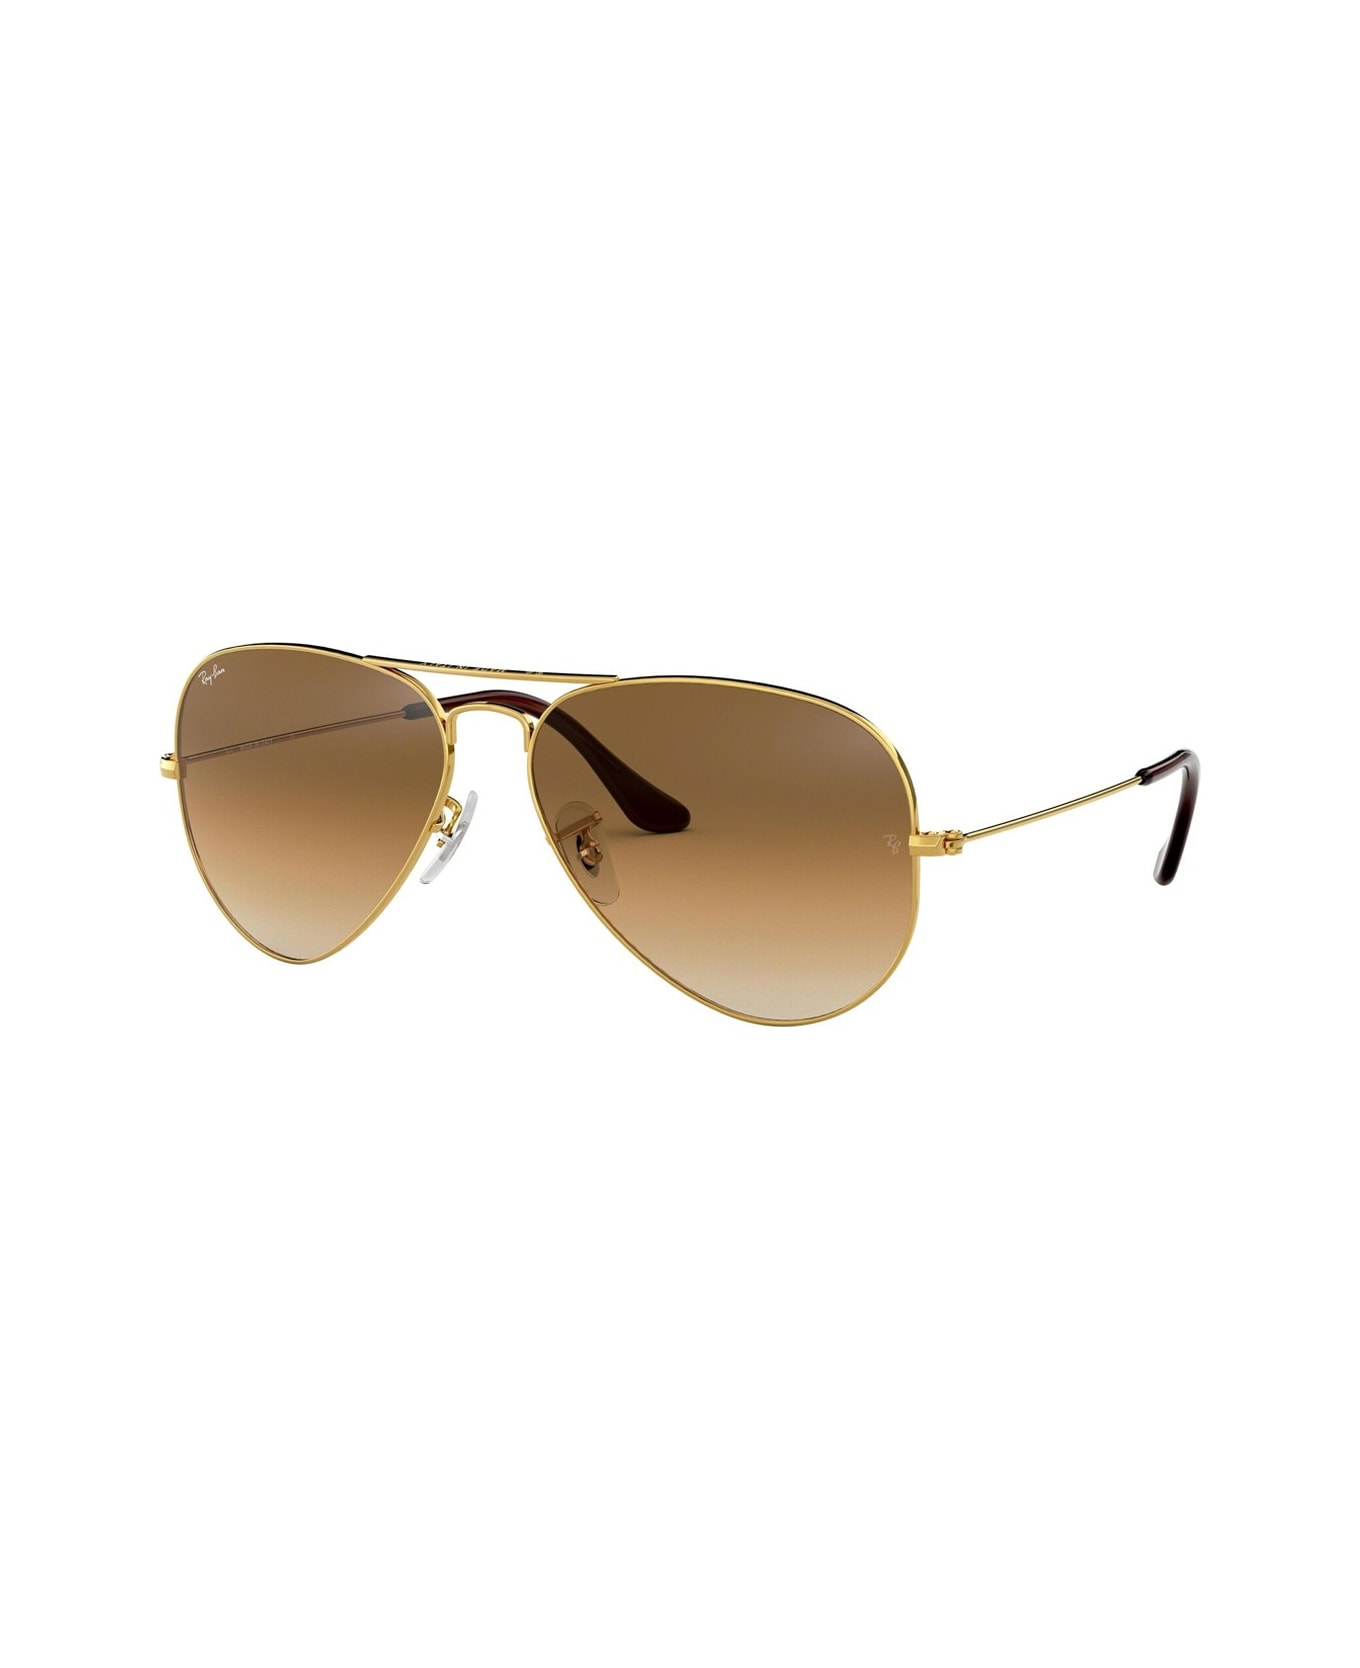 Ray-Ban Aviator 3025 Sunglasses - Oro